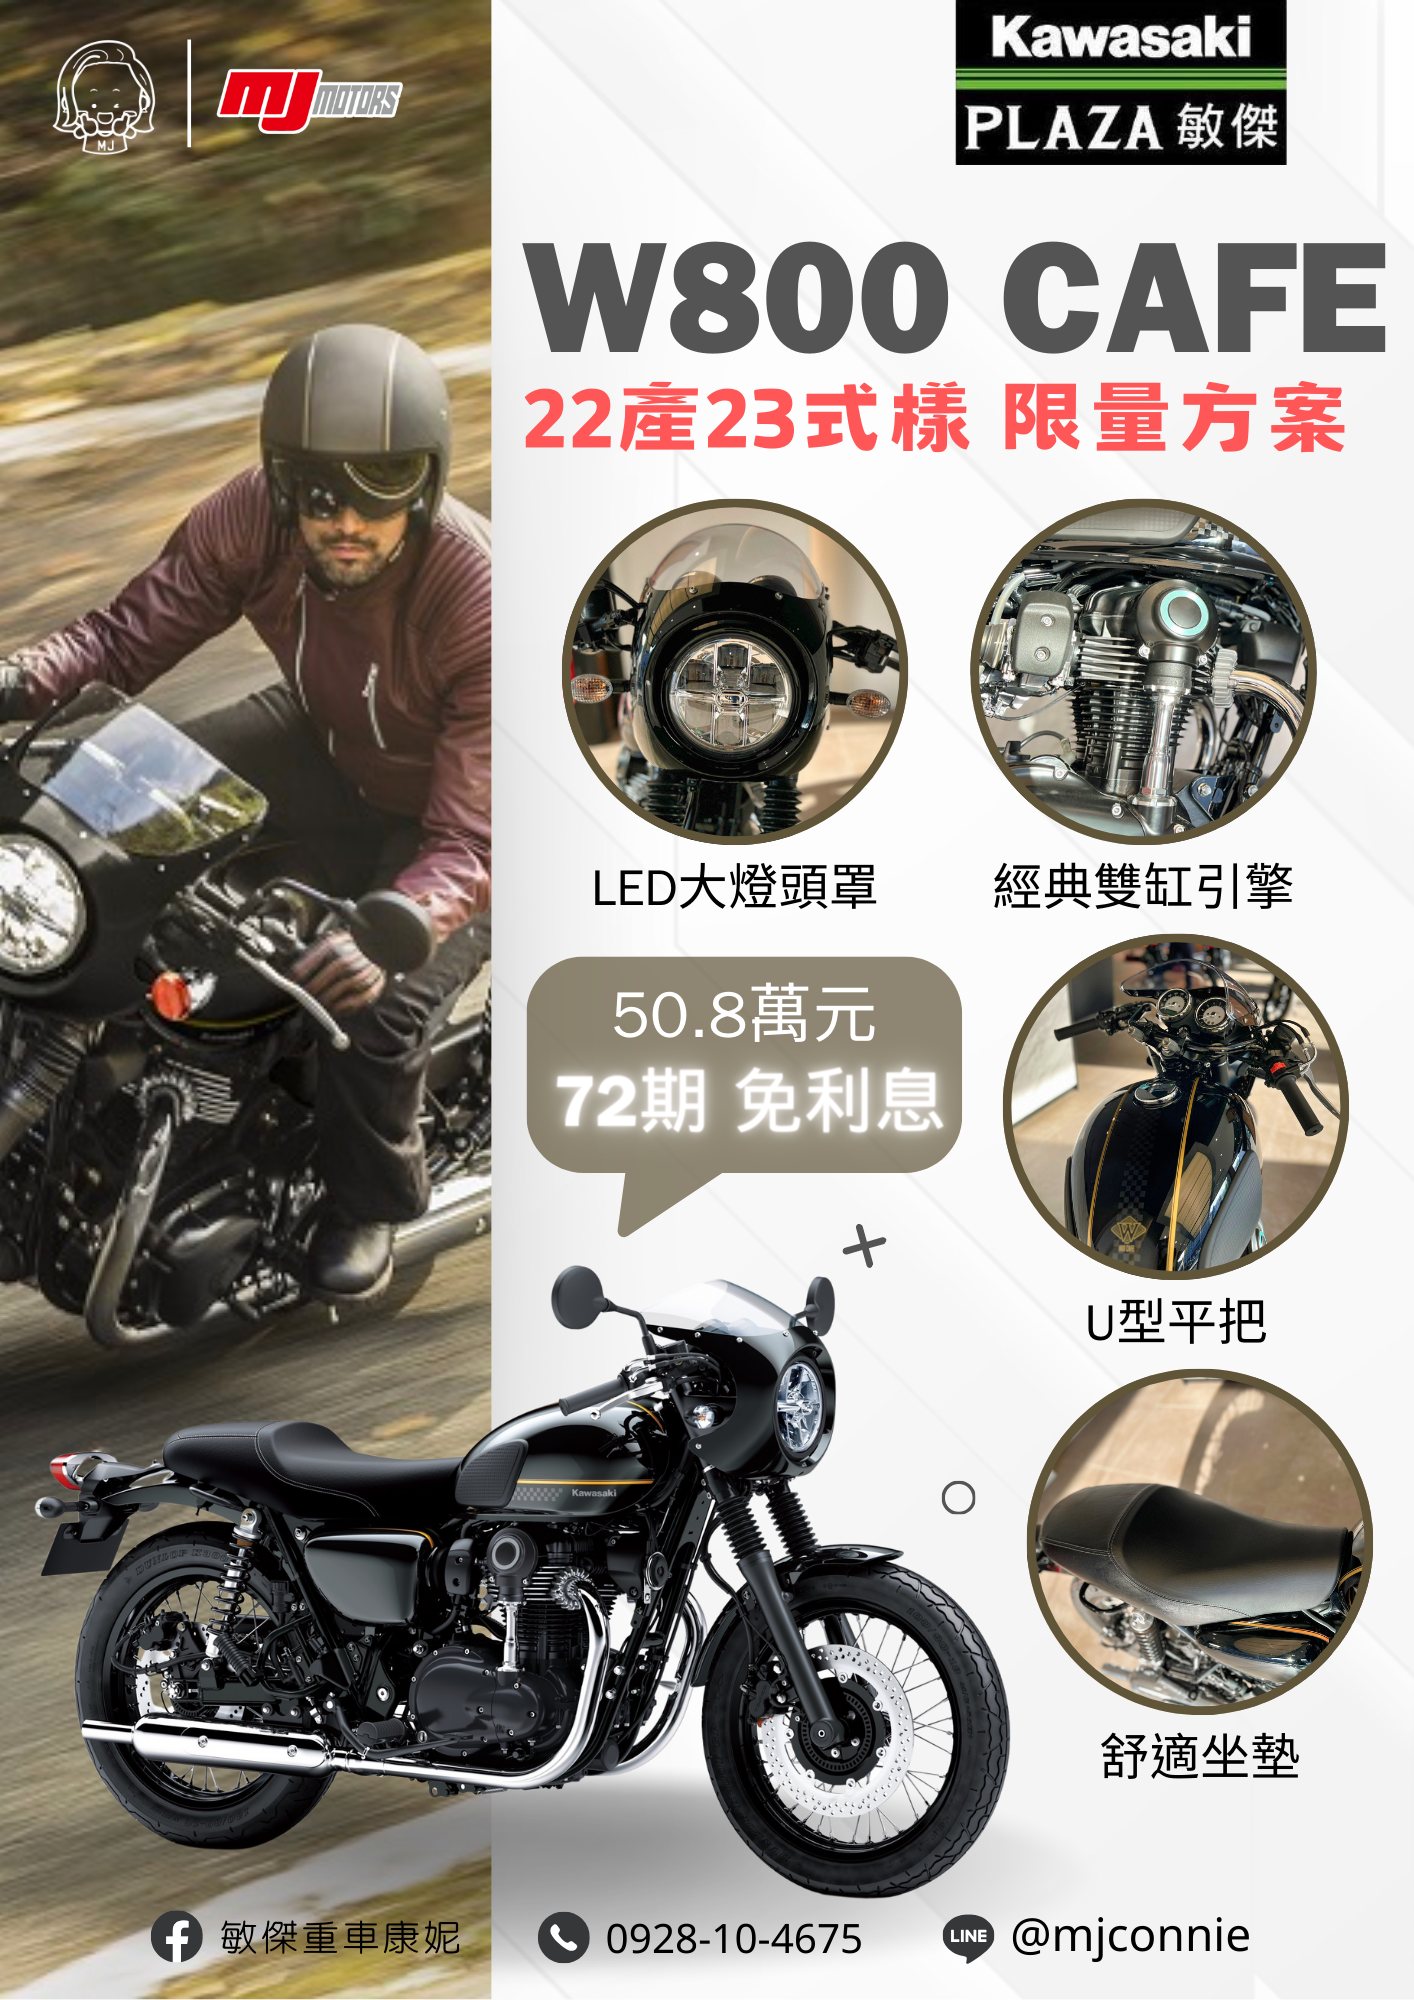 【敏傑車業資深銷售專員 康妮 Connie】KAWASAKI W800 CAFE - 「Webike-摩托車市」 『敏傑康妮』Kawasaki W800 CAFE RACER 讓您帥一波!! 月繳只要7056 超輕鬆!!!一秒變型男吧